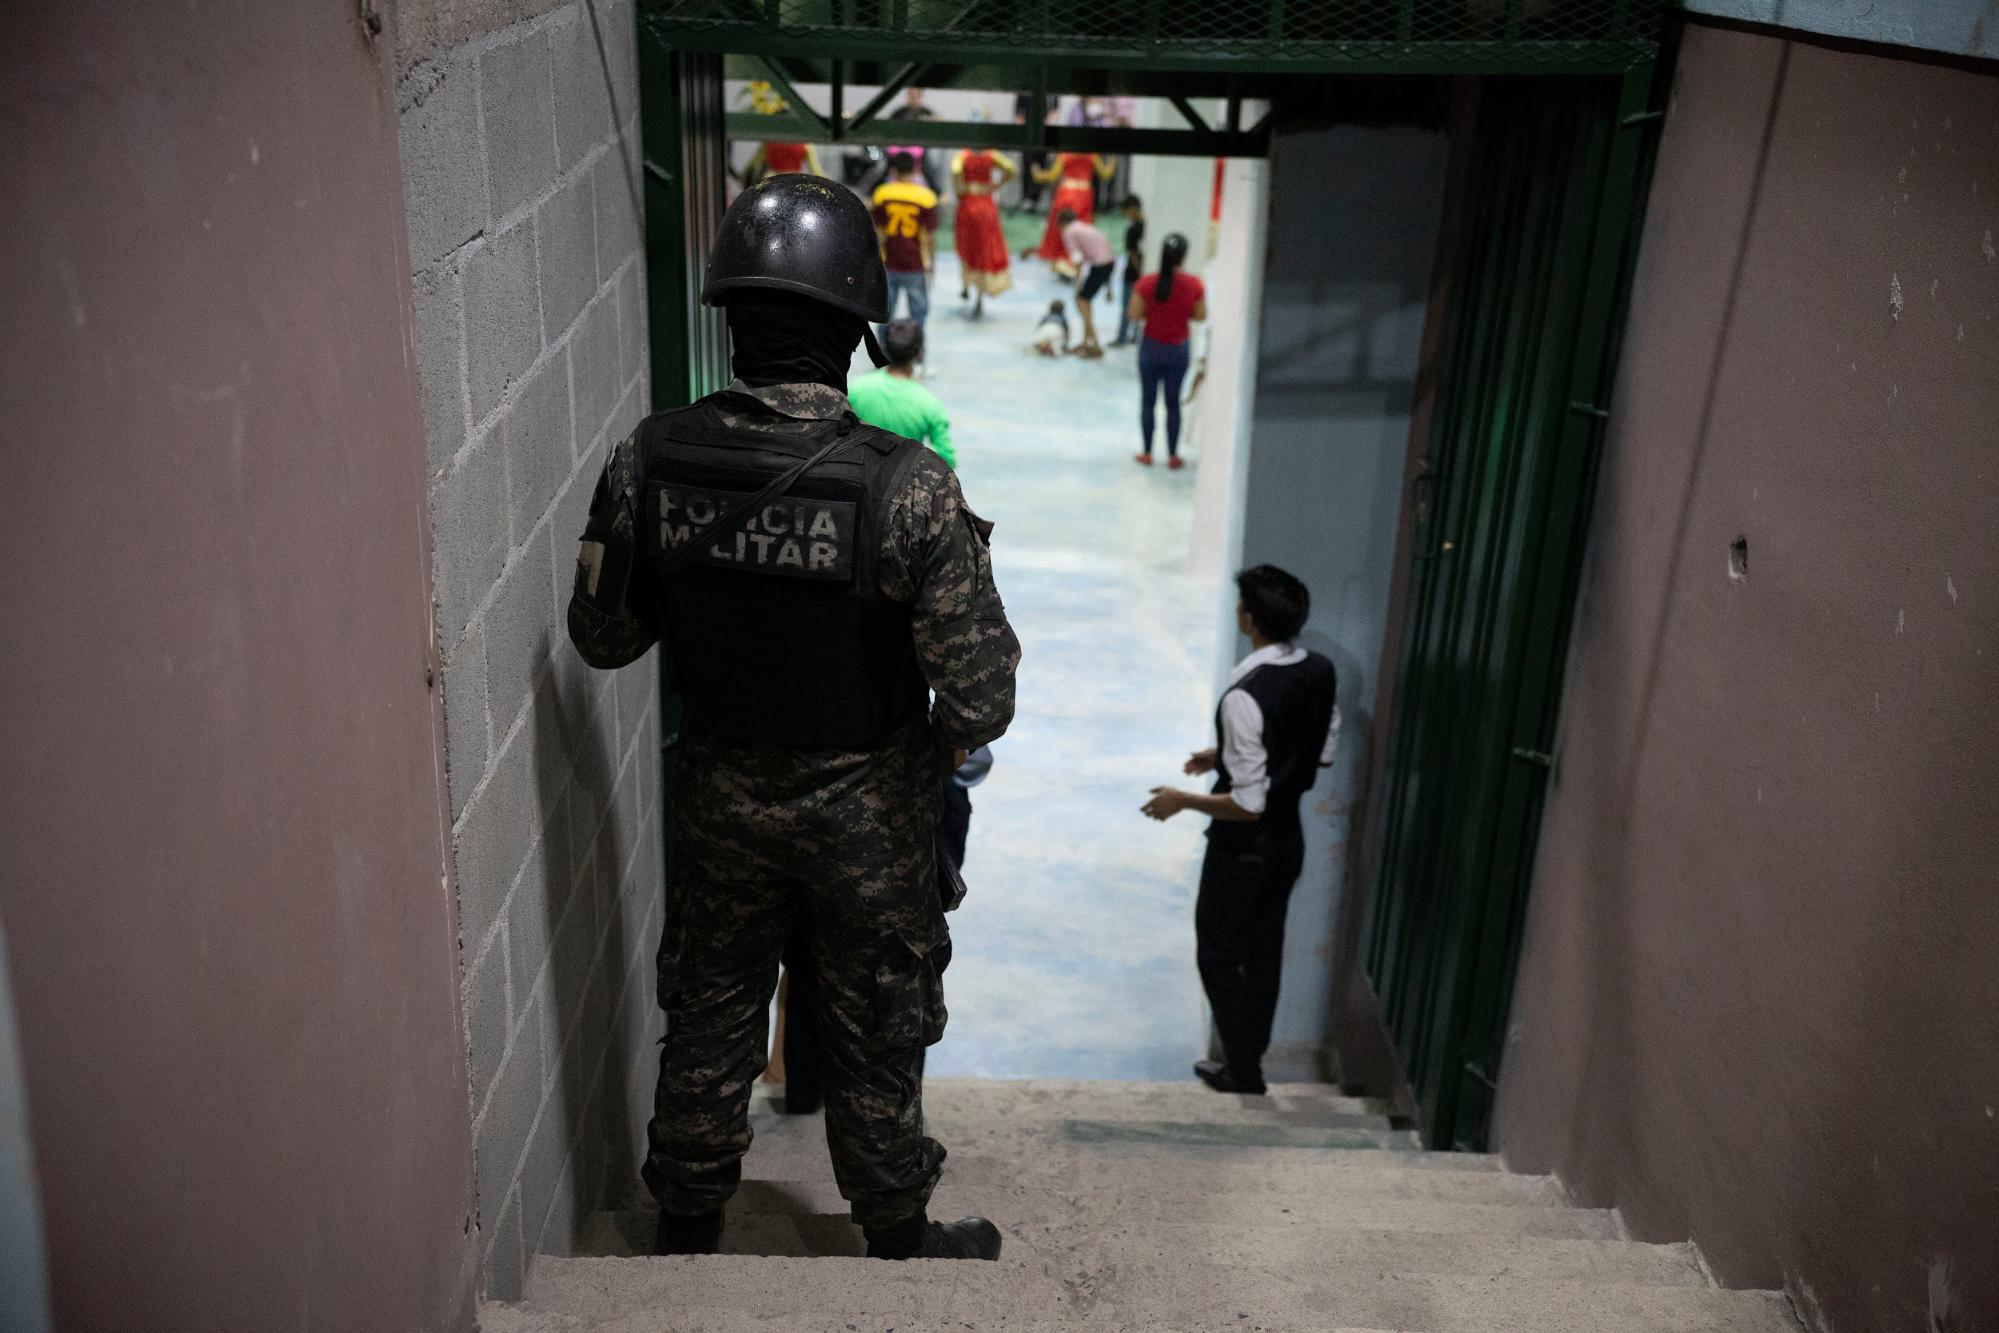 Un policía militar observa el culto en una iglesia evangélica en el barrio Villanueva de Tegucigalpa, durante un operativo de rutina. Foto CC/Fernando Destephen.